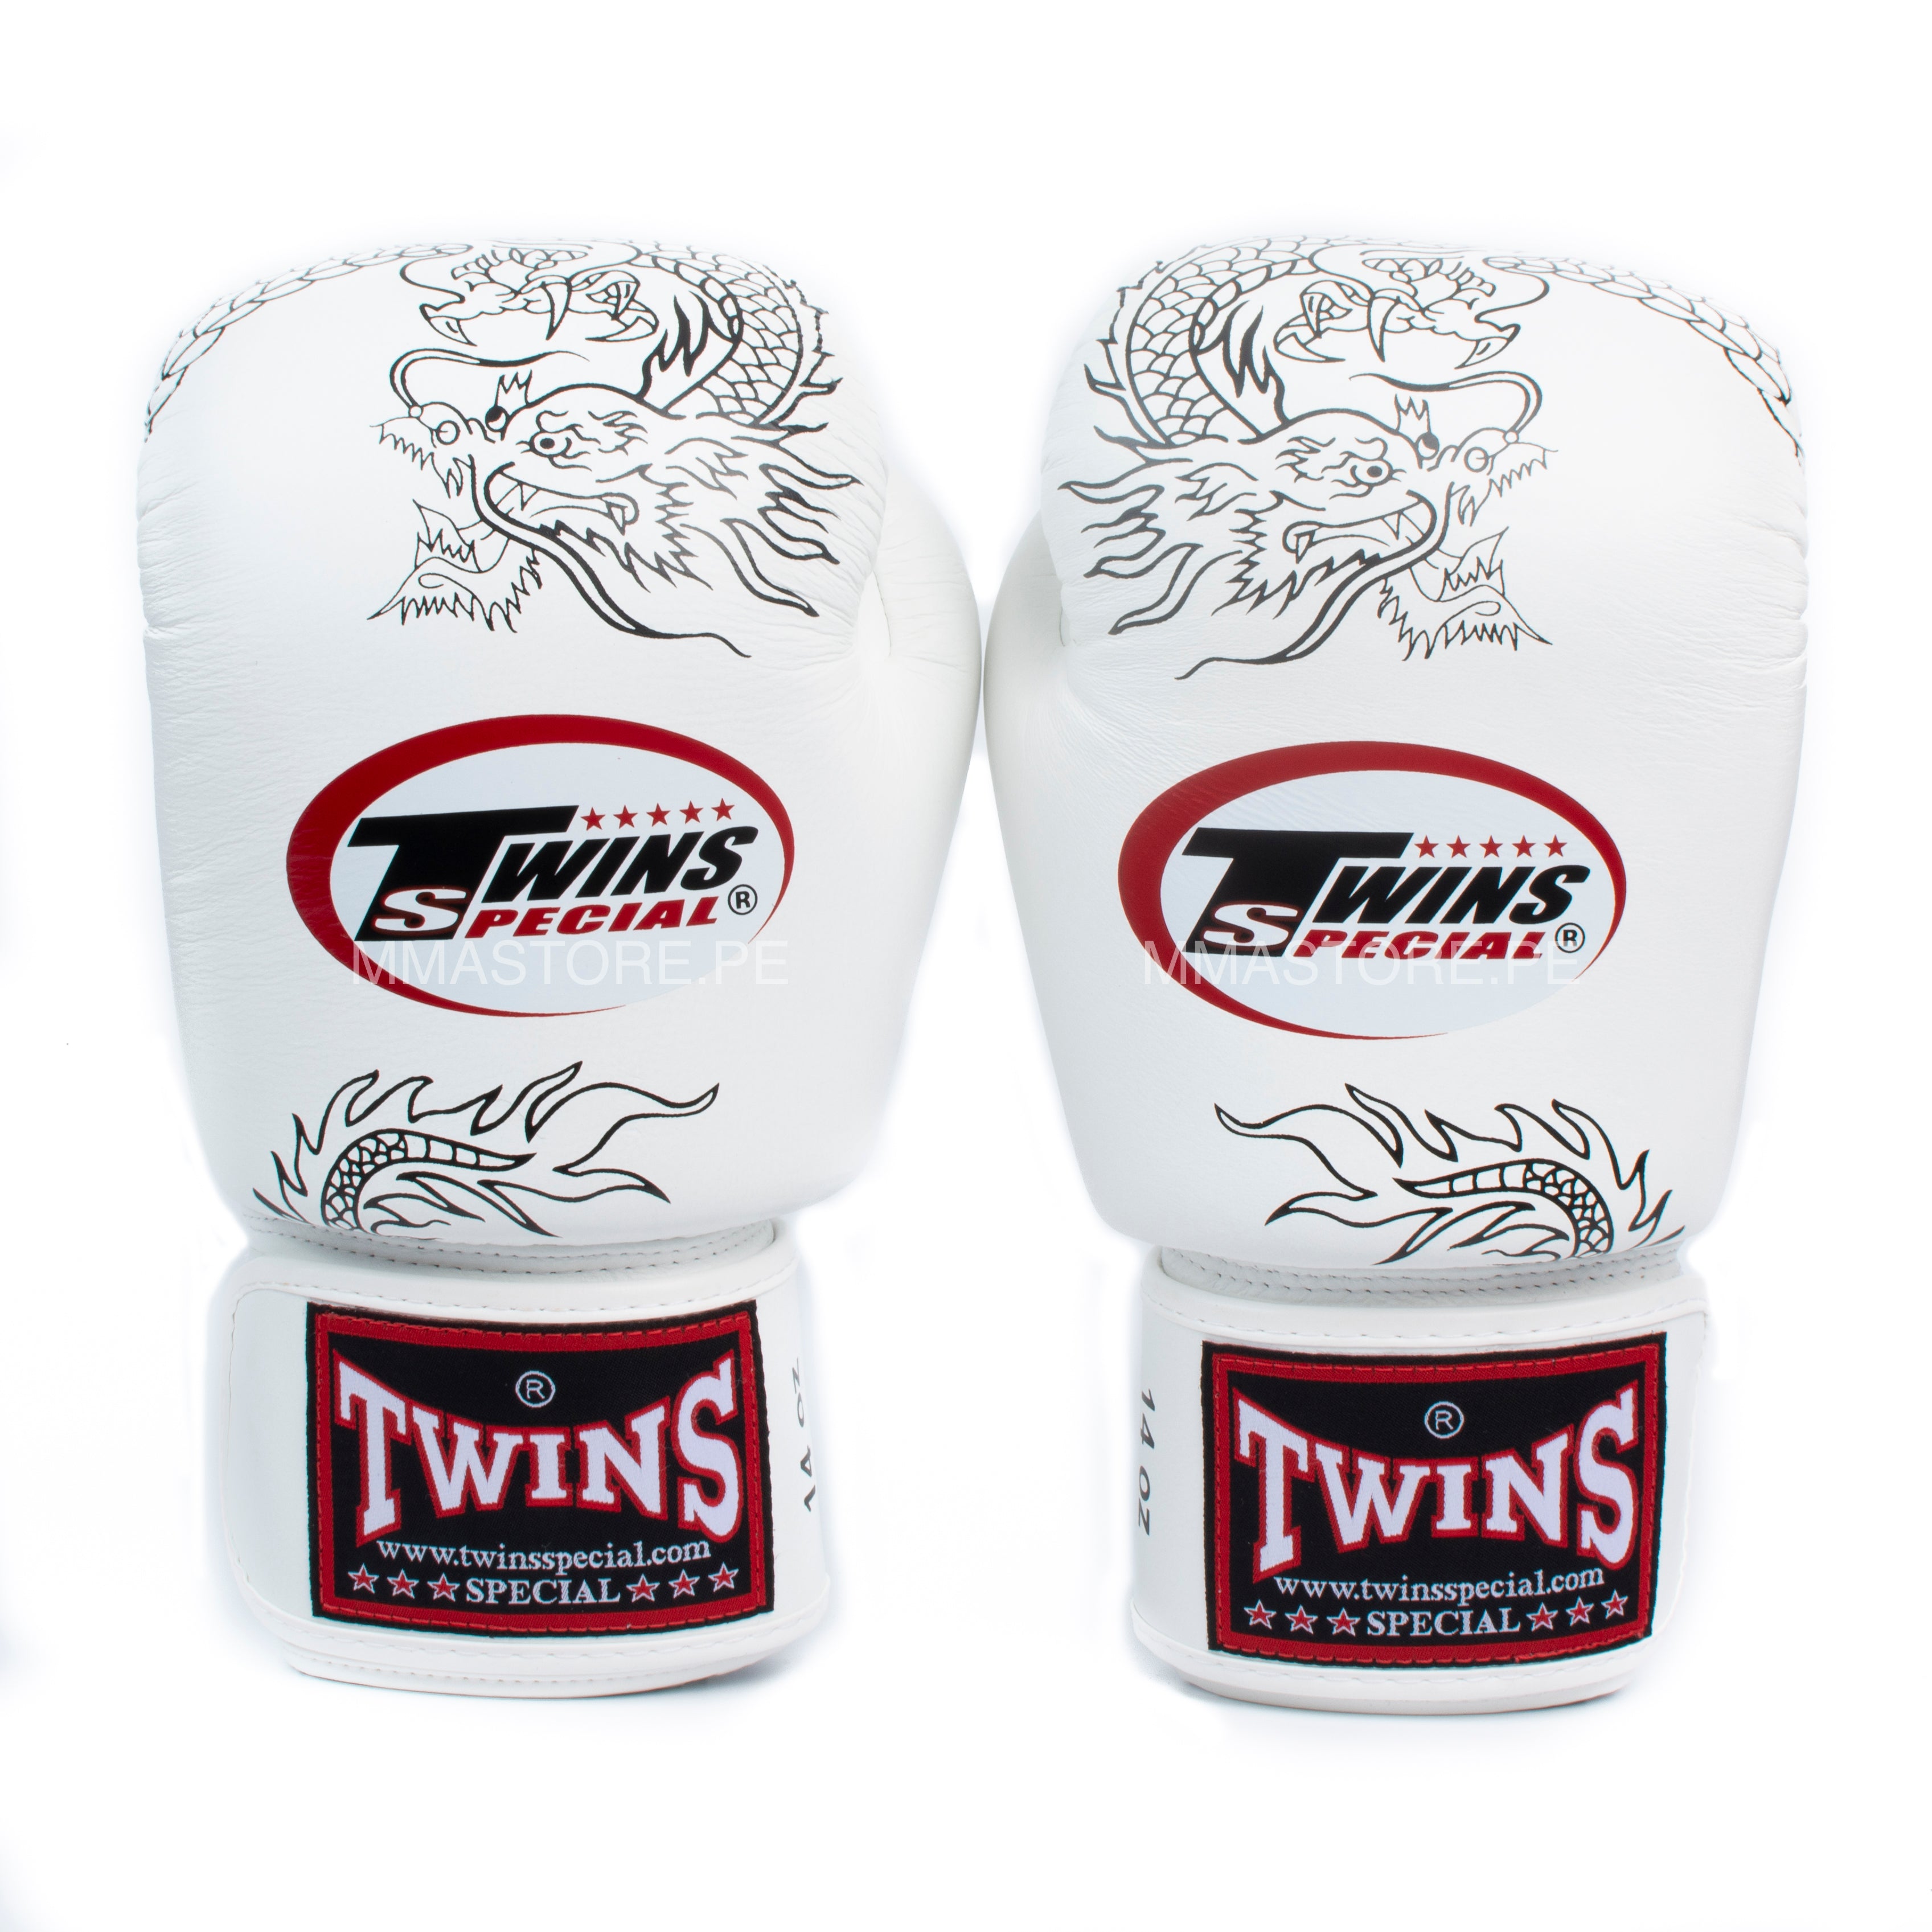 guantes de boxeo twins special dragon 6 blanco